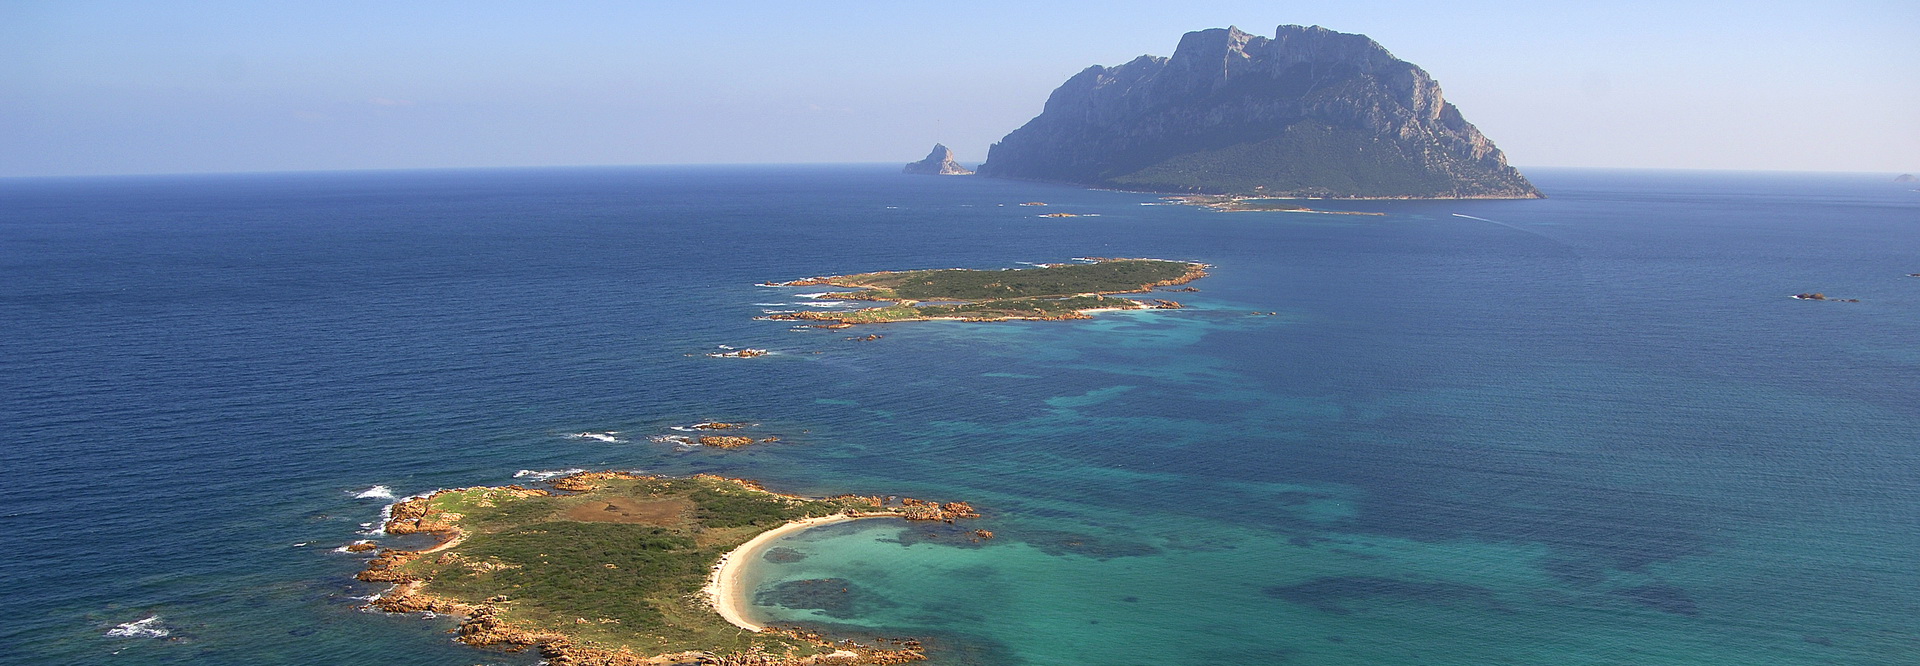 PIM - Piccole Isole del Mediterraneo